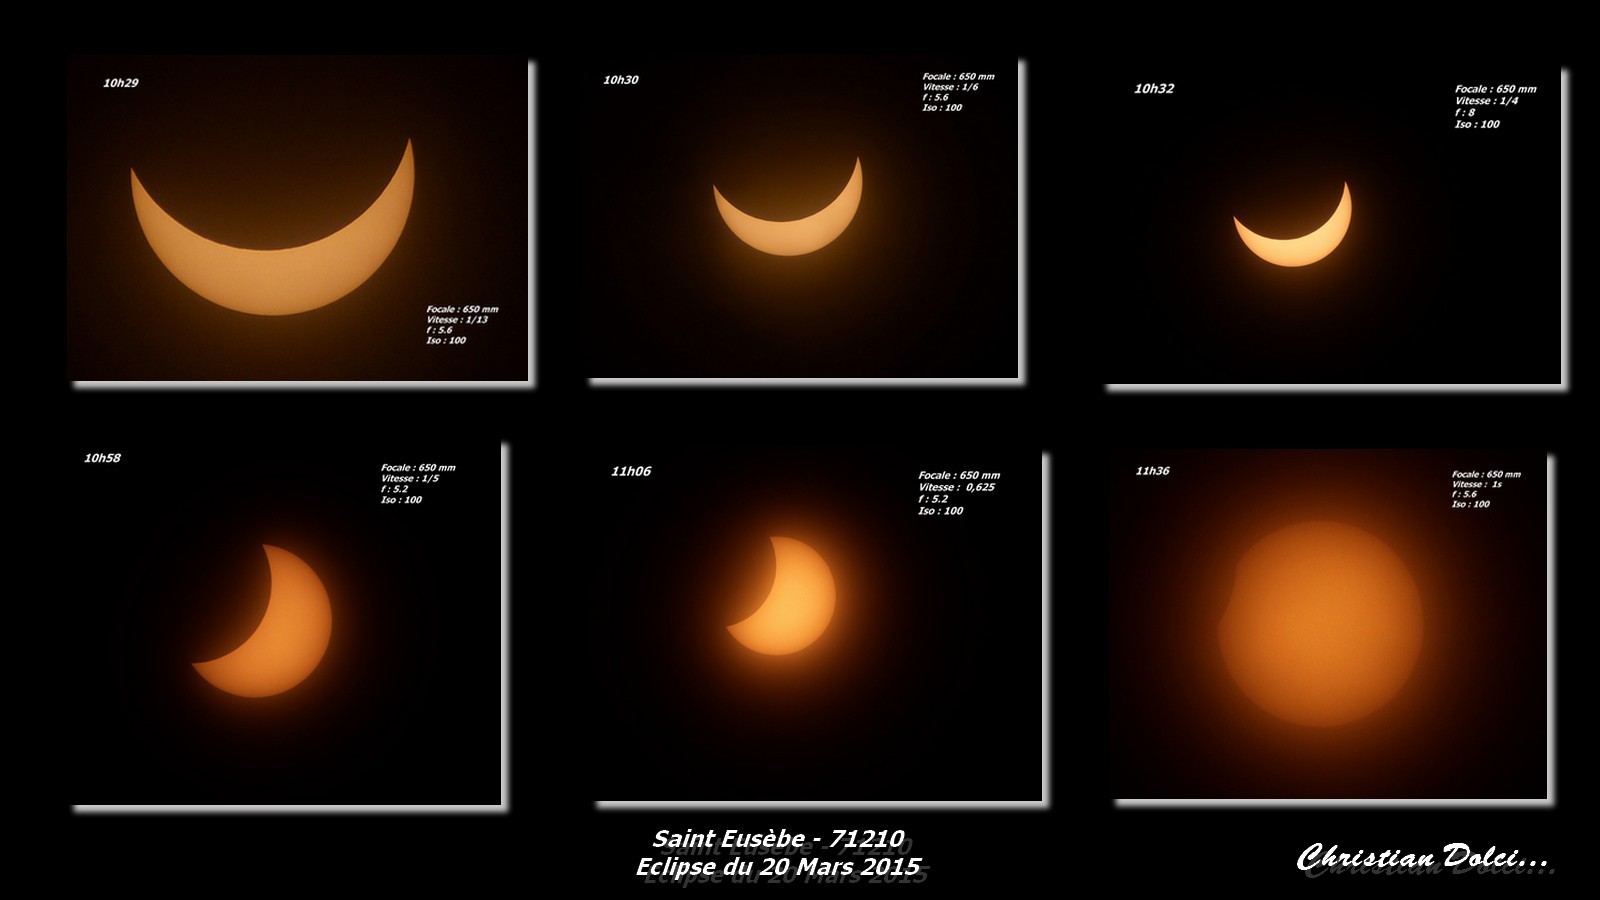 Eclipse de soleil du 20 Mars 2015 - Planche photos